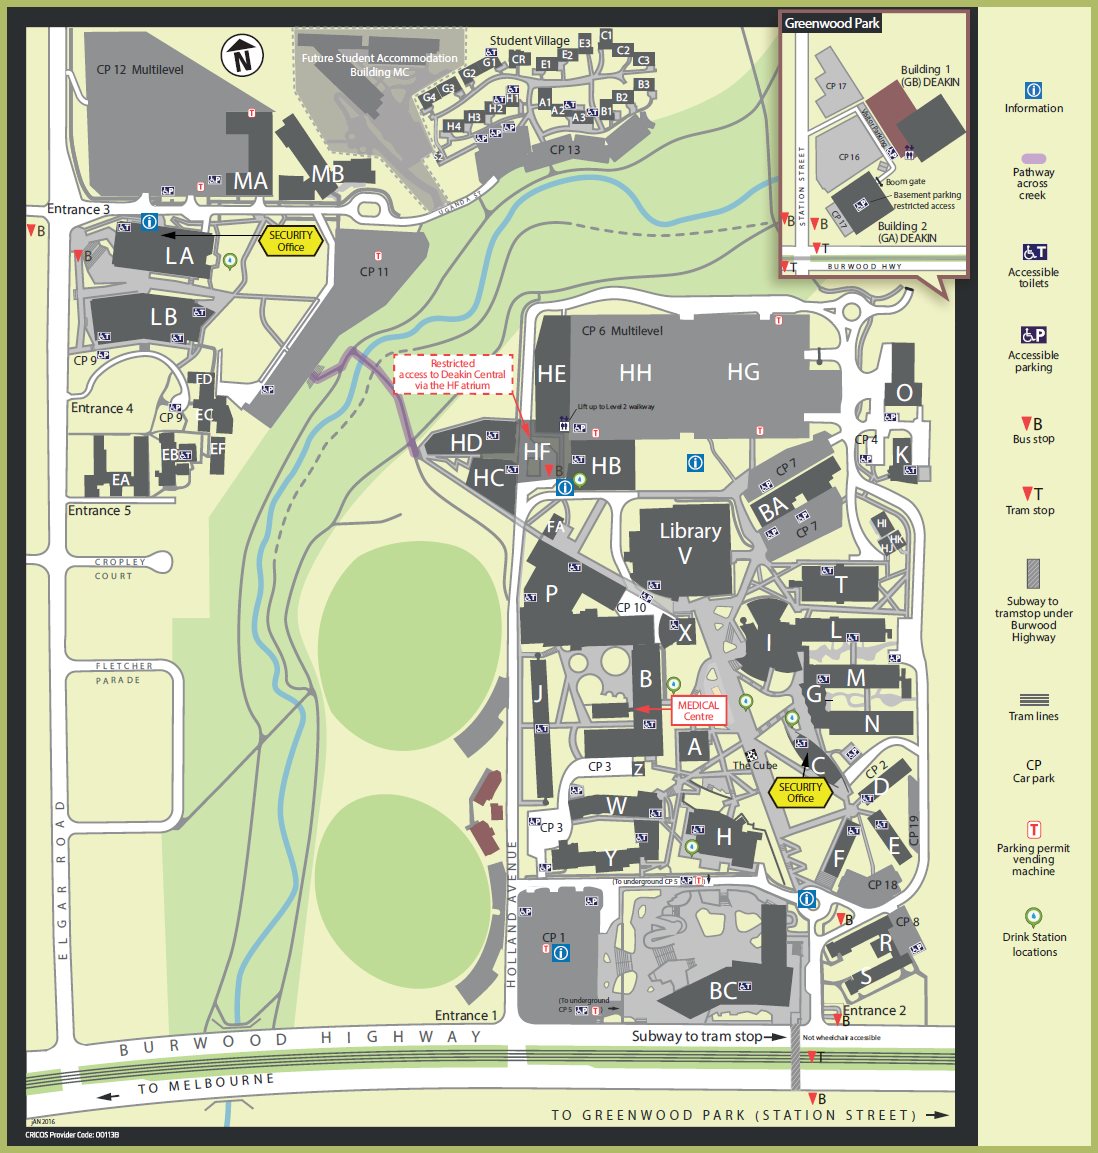 Melbourne Burwood campus map